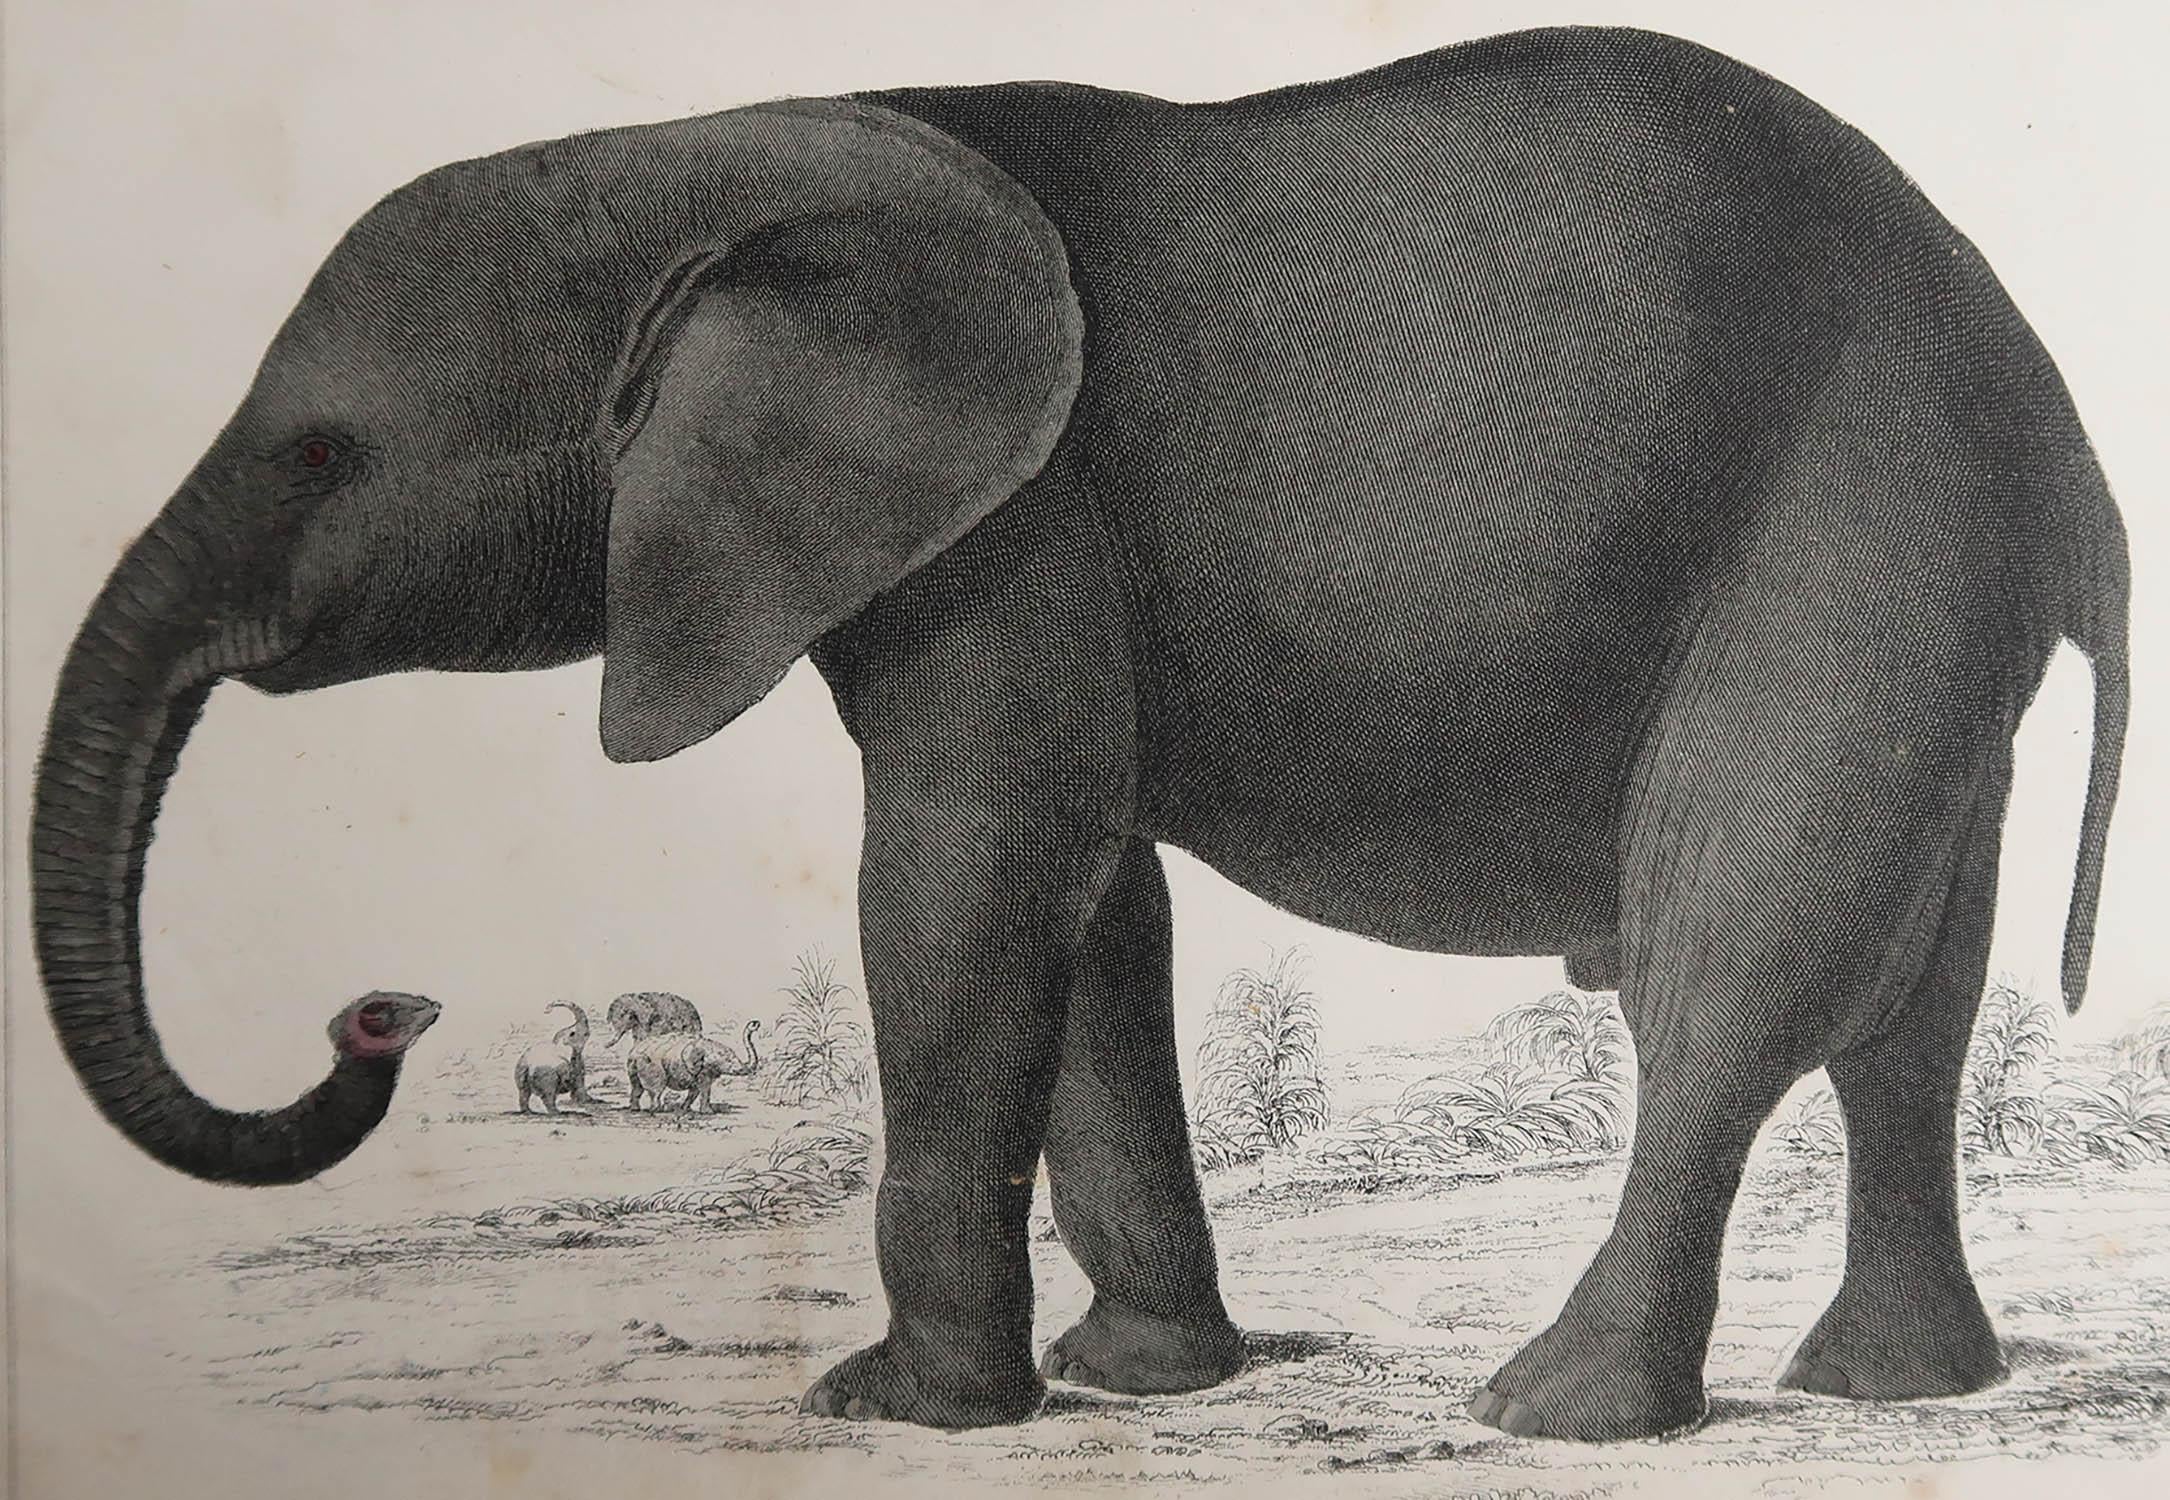 Belle image d'un éléphant.

Non encadré. Il vous donne la possibilité de réaliser un montage en utilisant les cadres de votre choix.

Lithographie d'après le Cpt. Brown avec couleur originale à la main.

Publié en 1847.





.